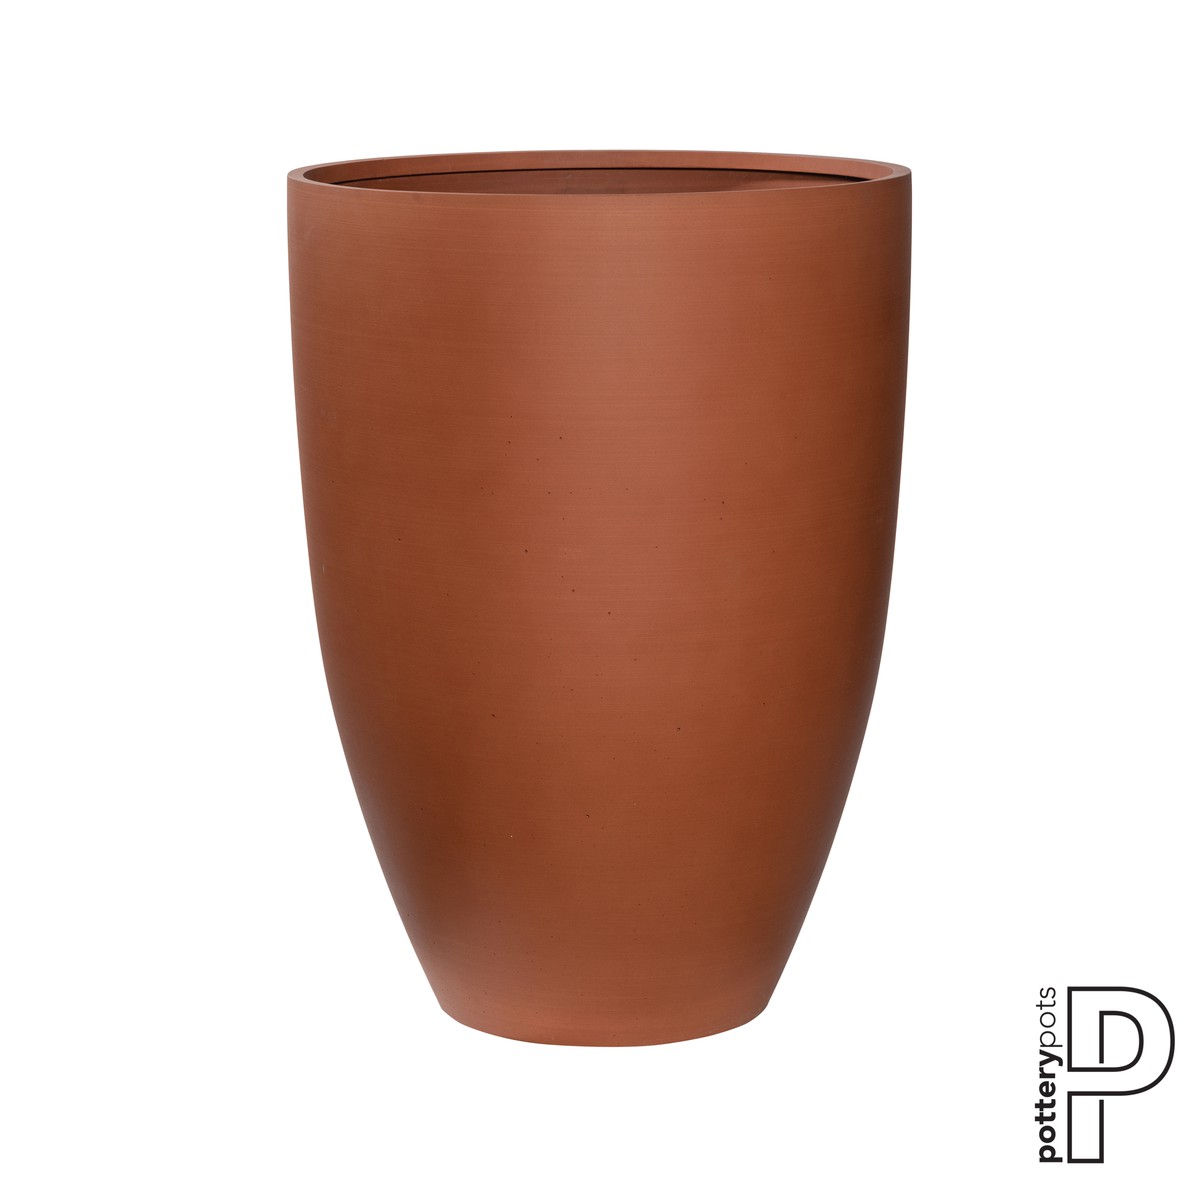 Potterypots Refined Ben XL Brun terre de Sienne 52x72cm 119L